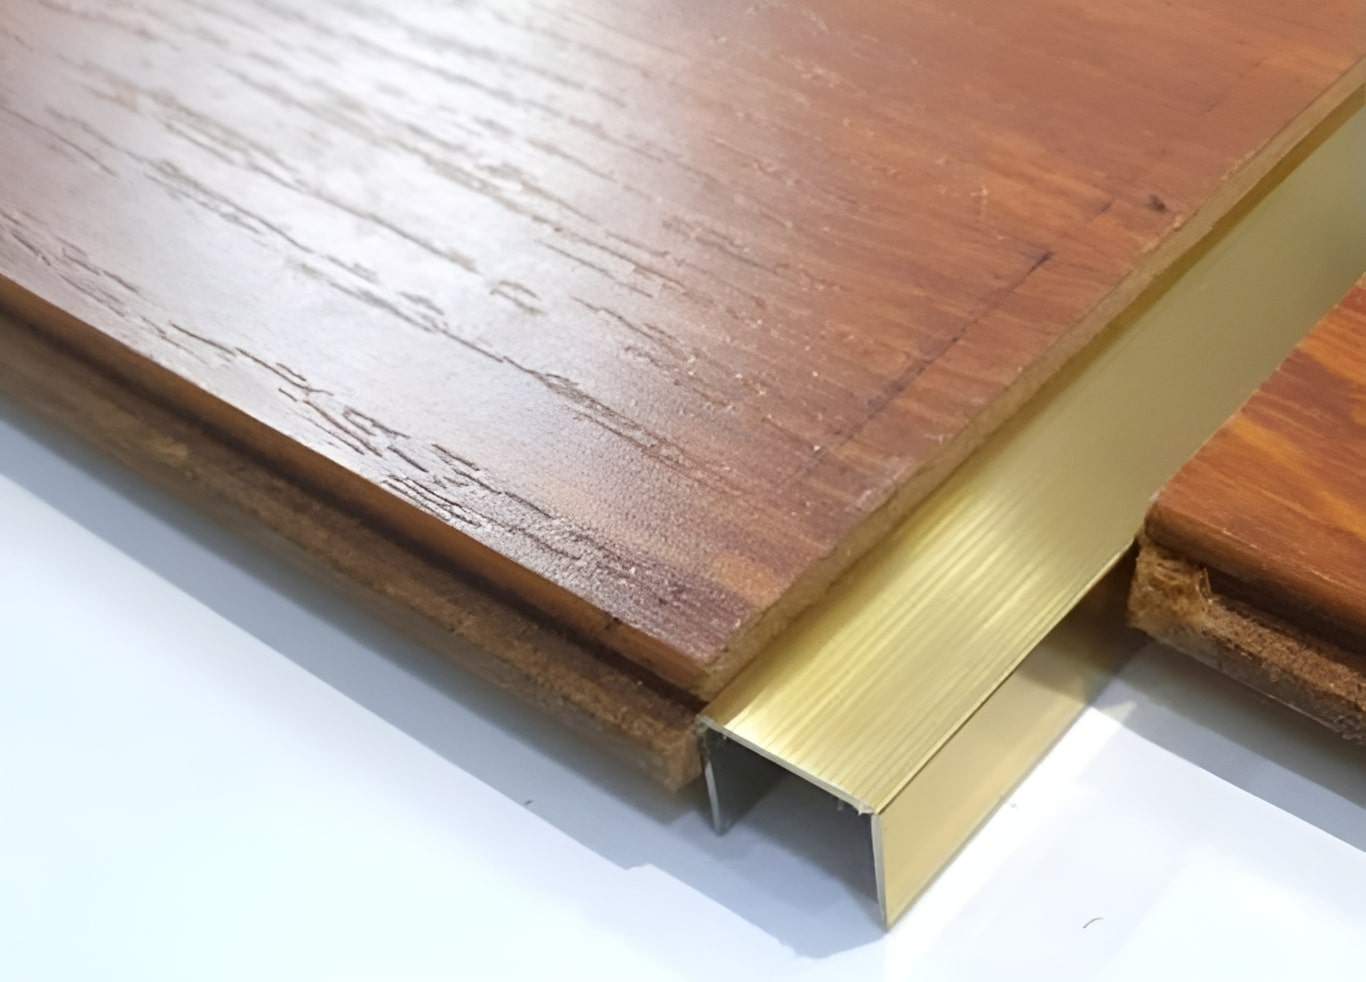 Nẹp inox chữ U xước màu vàng được dùng để chỉ khe giãn cách giữa 2 bề mặt vật liệu gỗ